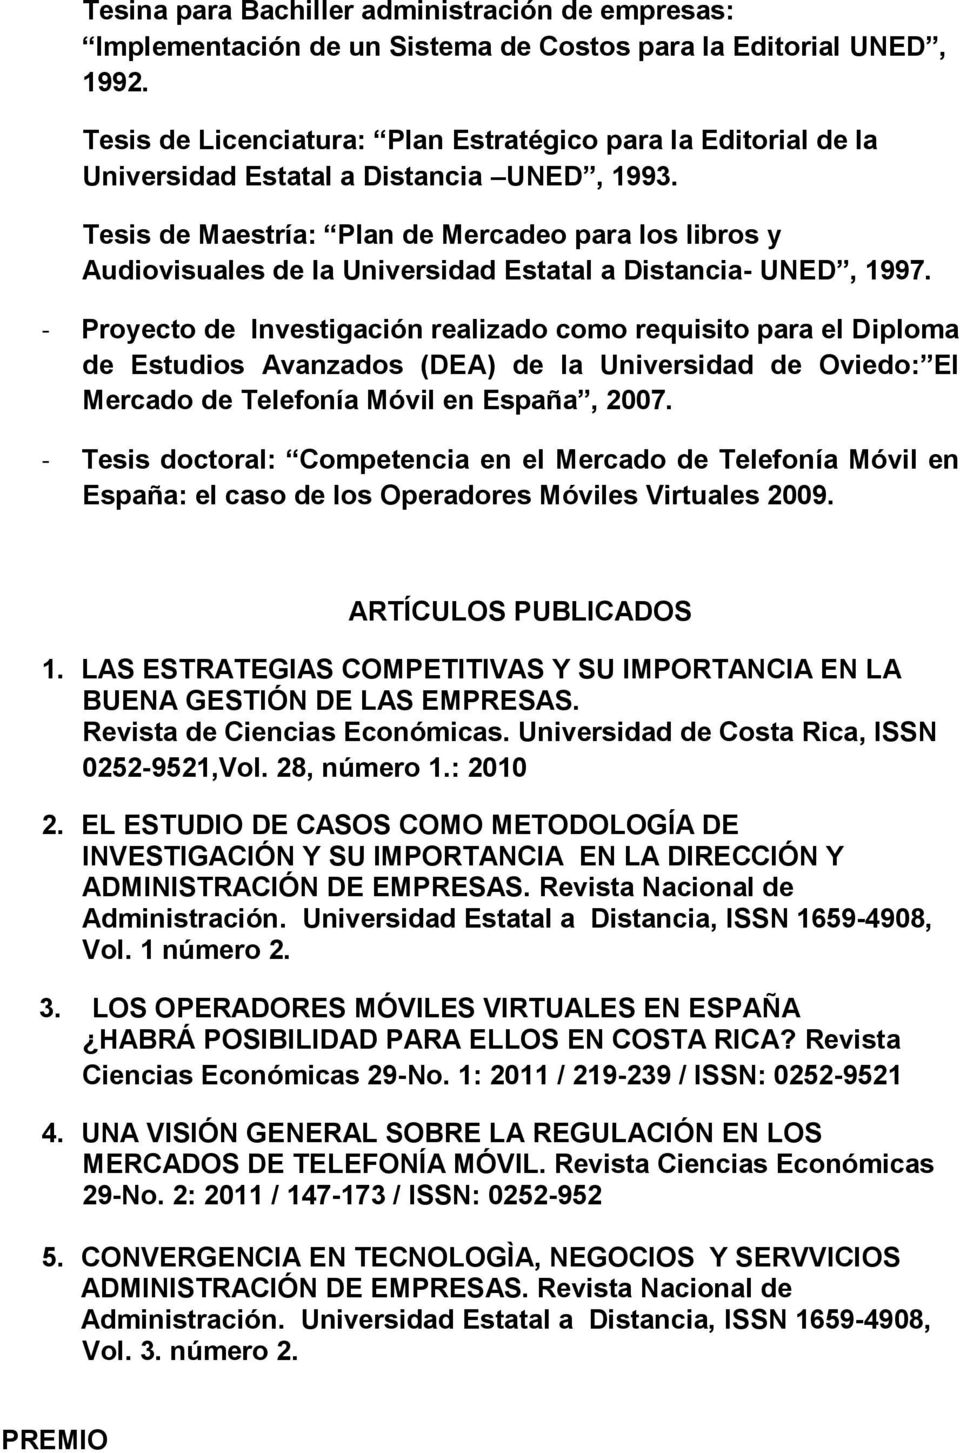 Tesis de Maestría: Plan de Mercadeo para los libros y Audiovisuales de la Universidad Estatal a Distancia- UNED, 1997.